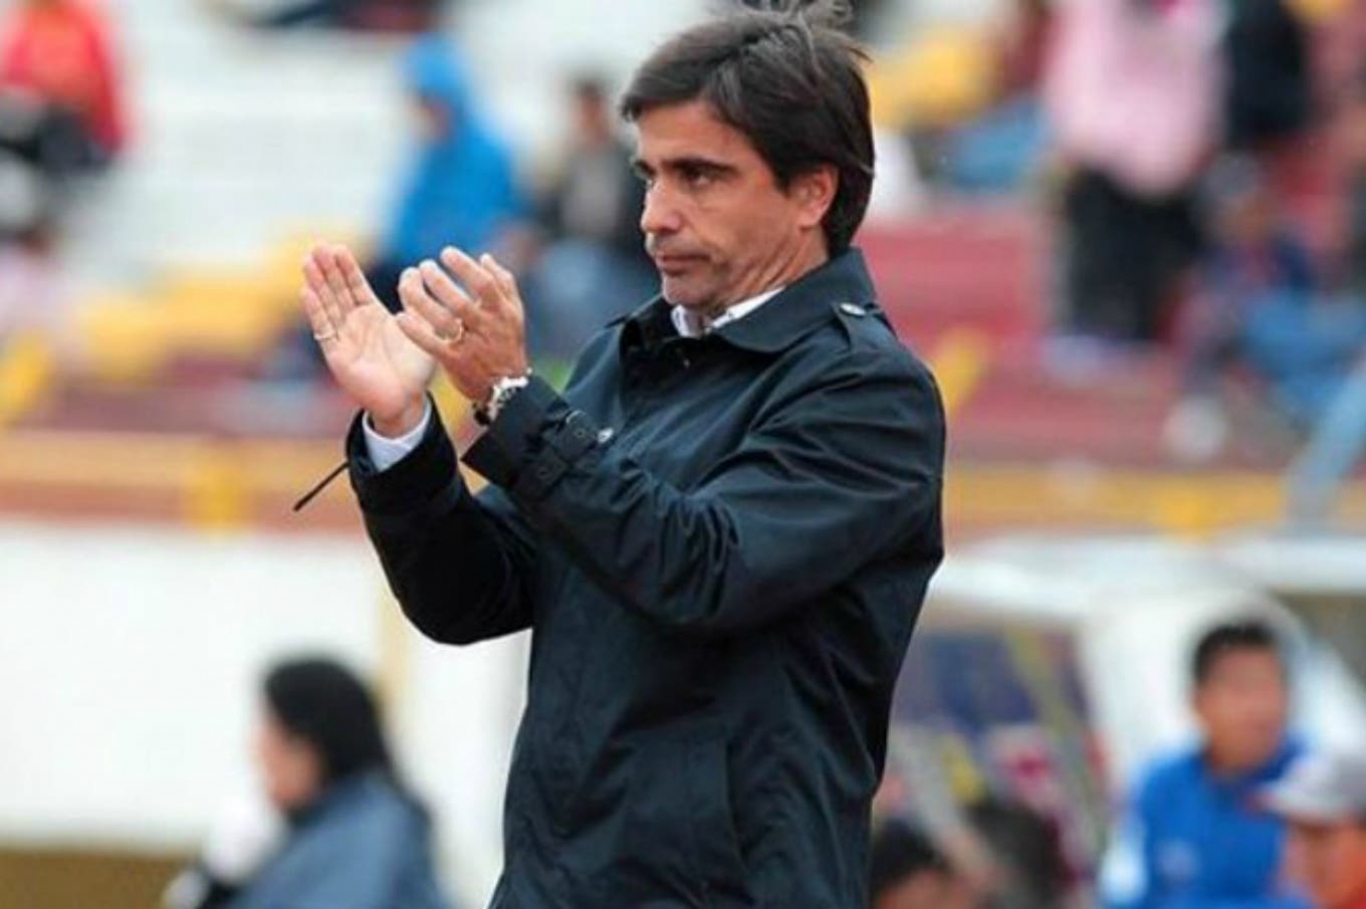 "Lo único que espero es que, al volver, mis jugadores no se lesionen", Javier Sanguinetti